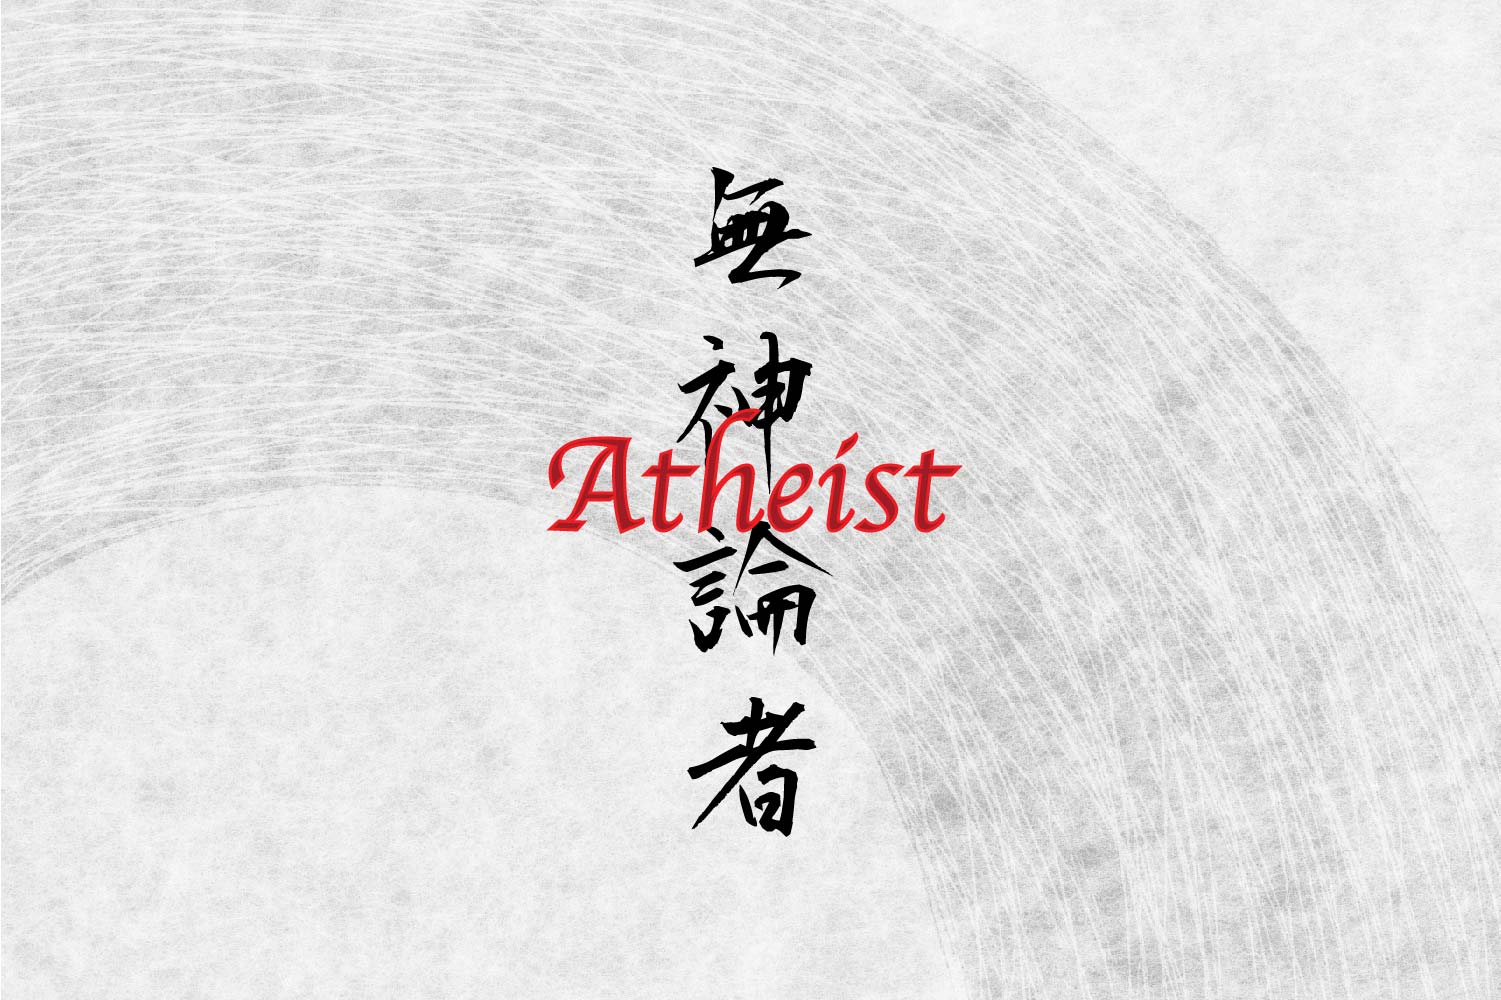 Japanese Writing Tattoo 'Atheist' In Kanji Symbols – Yorozuya